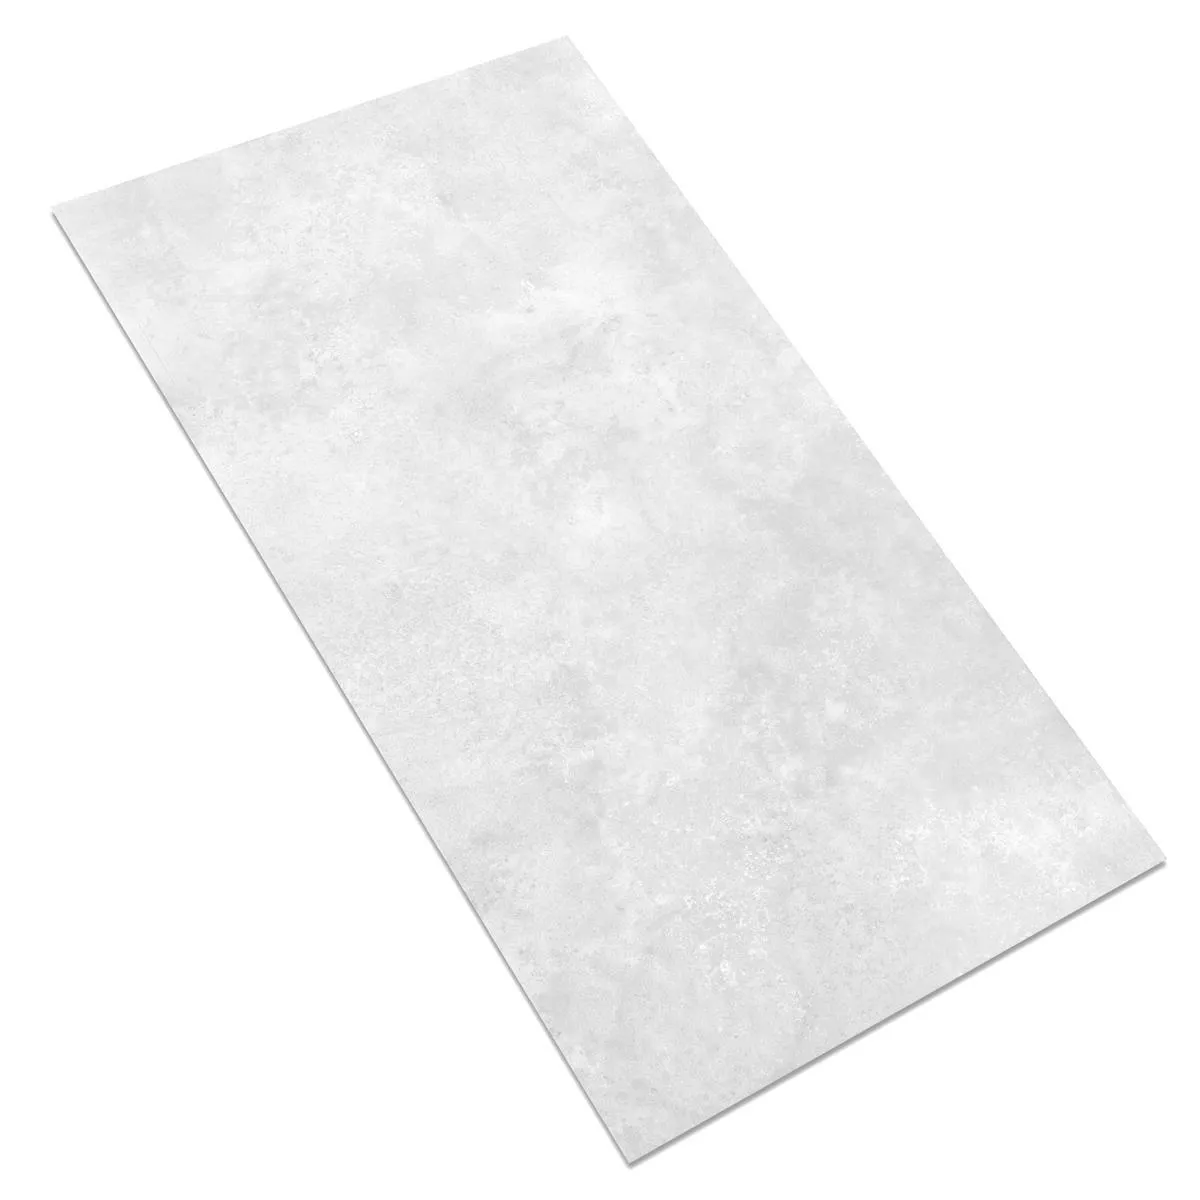 Πλακάκι Δαπέδου Illusion Μεταλλική Εμφάνιση Lappato Ασπρο 30x60cm